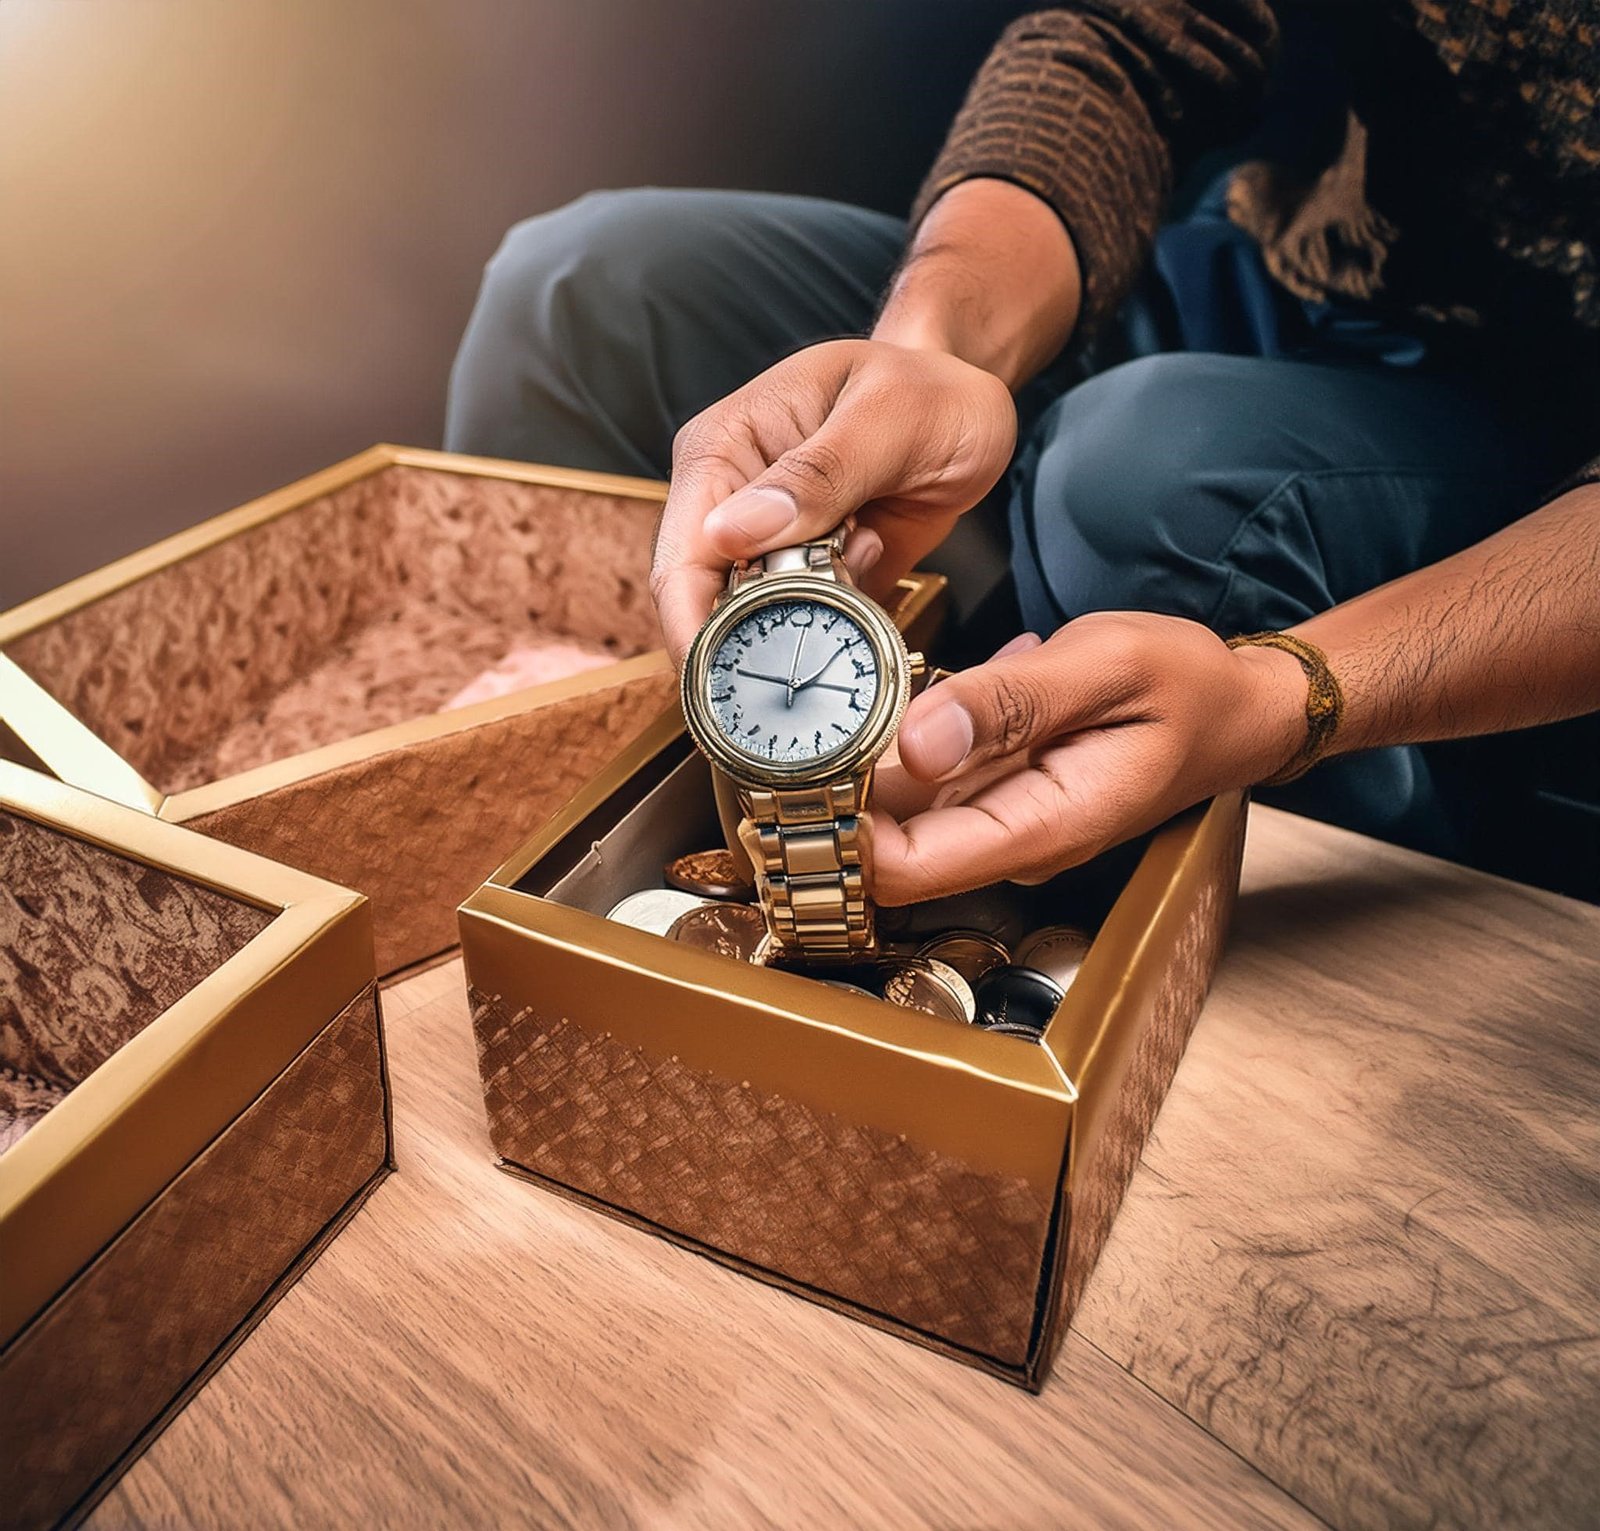 Persona almacenando su reloj en una caja